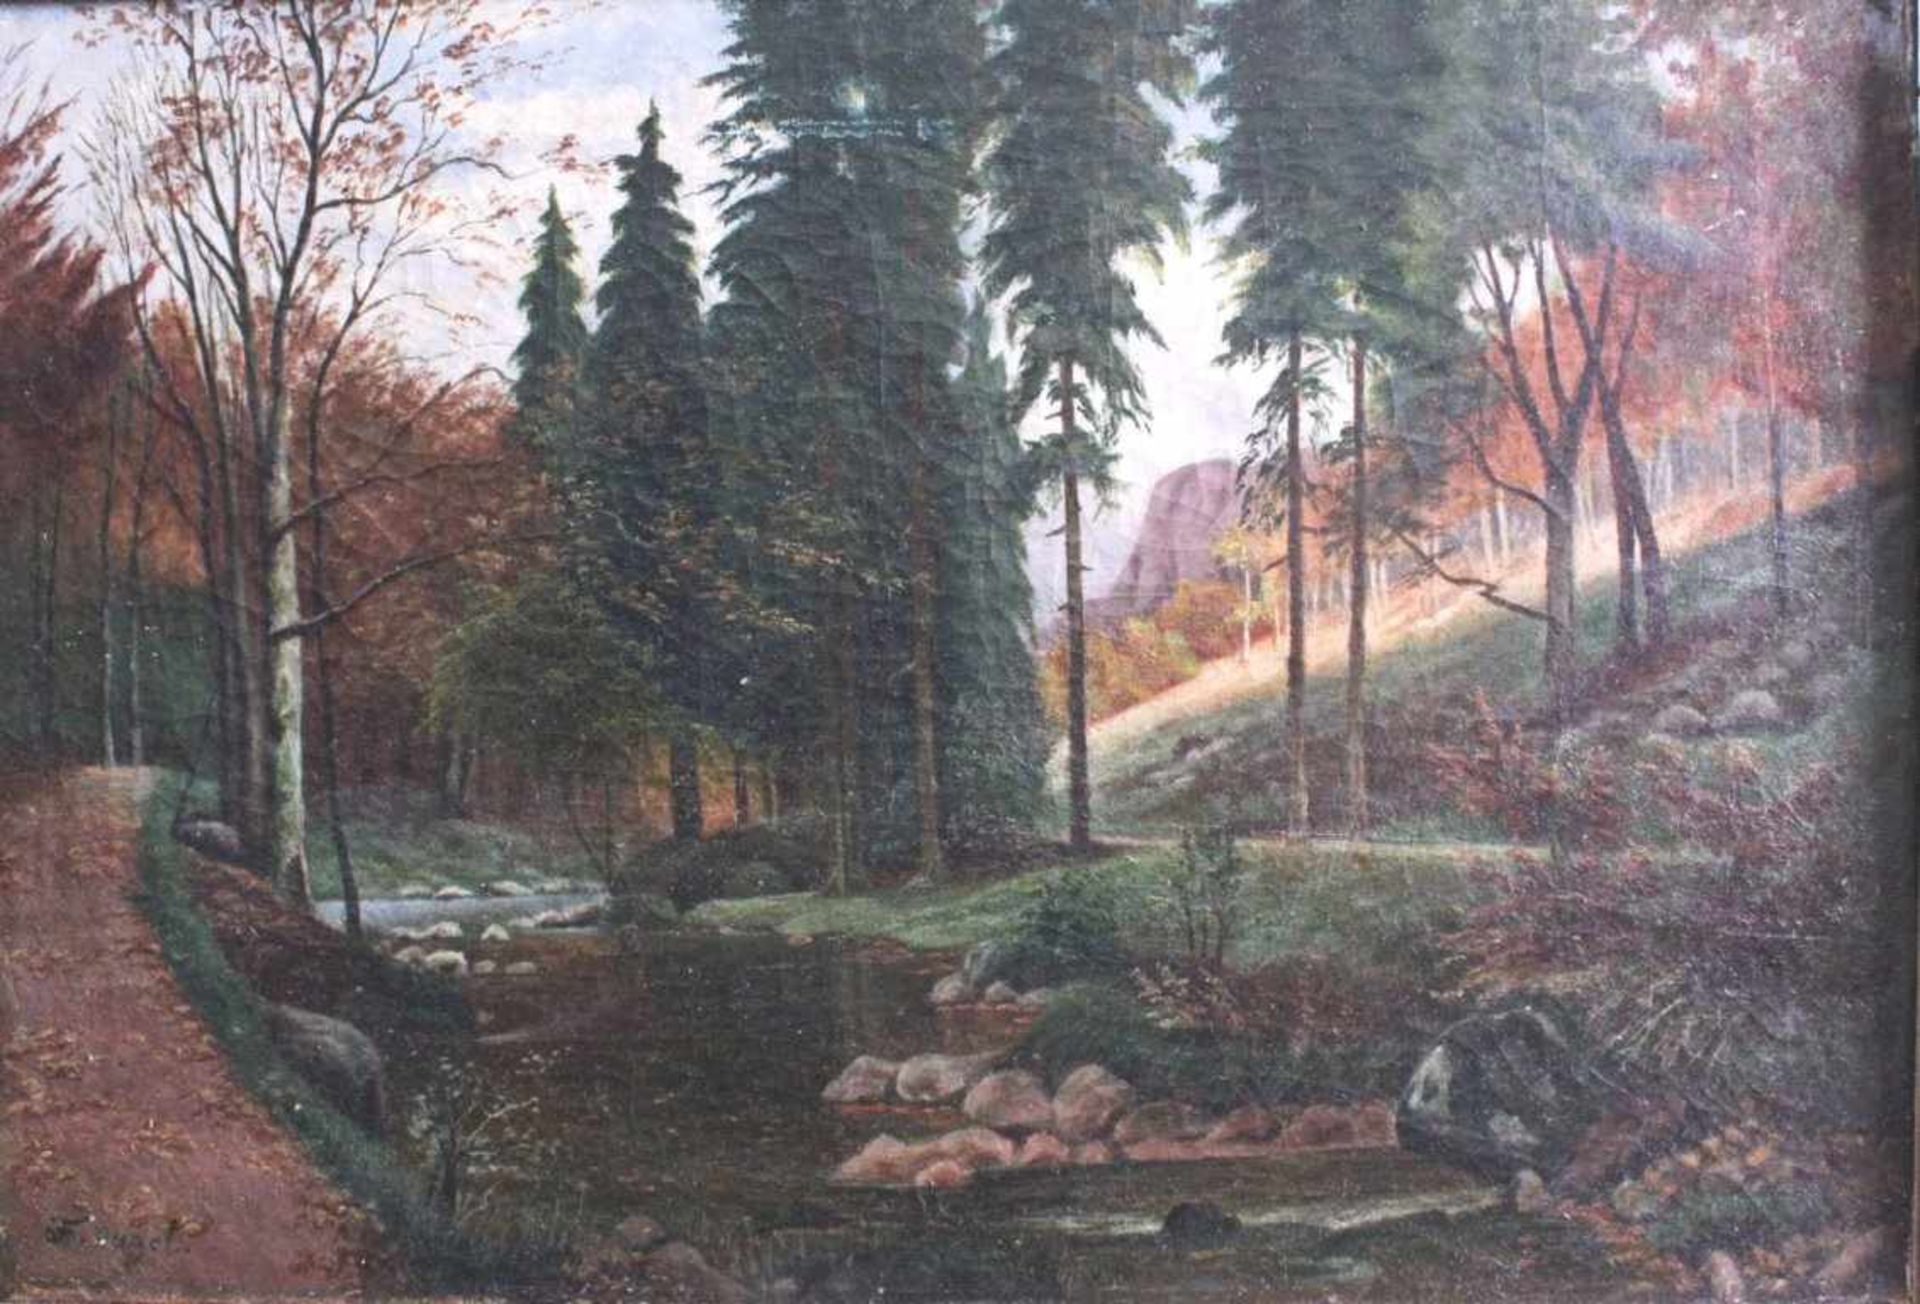 Sommerliche FlusslandschaftÖl auf Leinwand gemalt, ca. 43 x 63 cm. Unten linksbezeichnet F. Hagel,